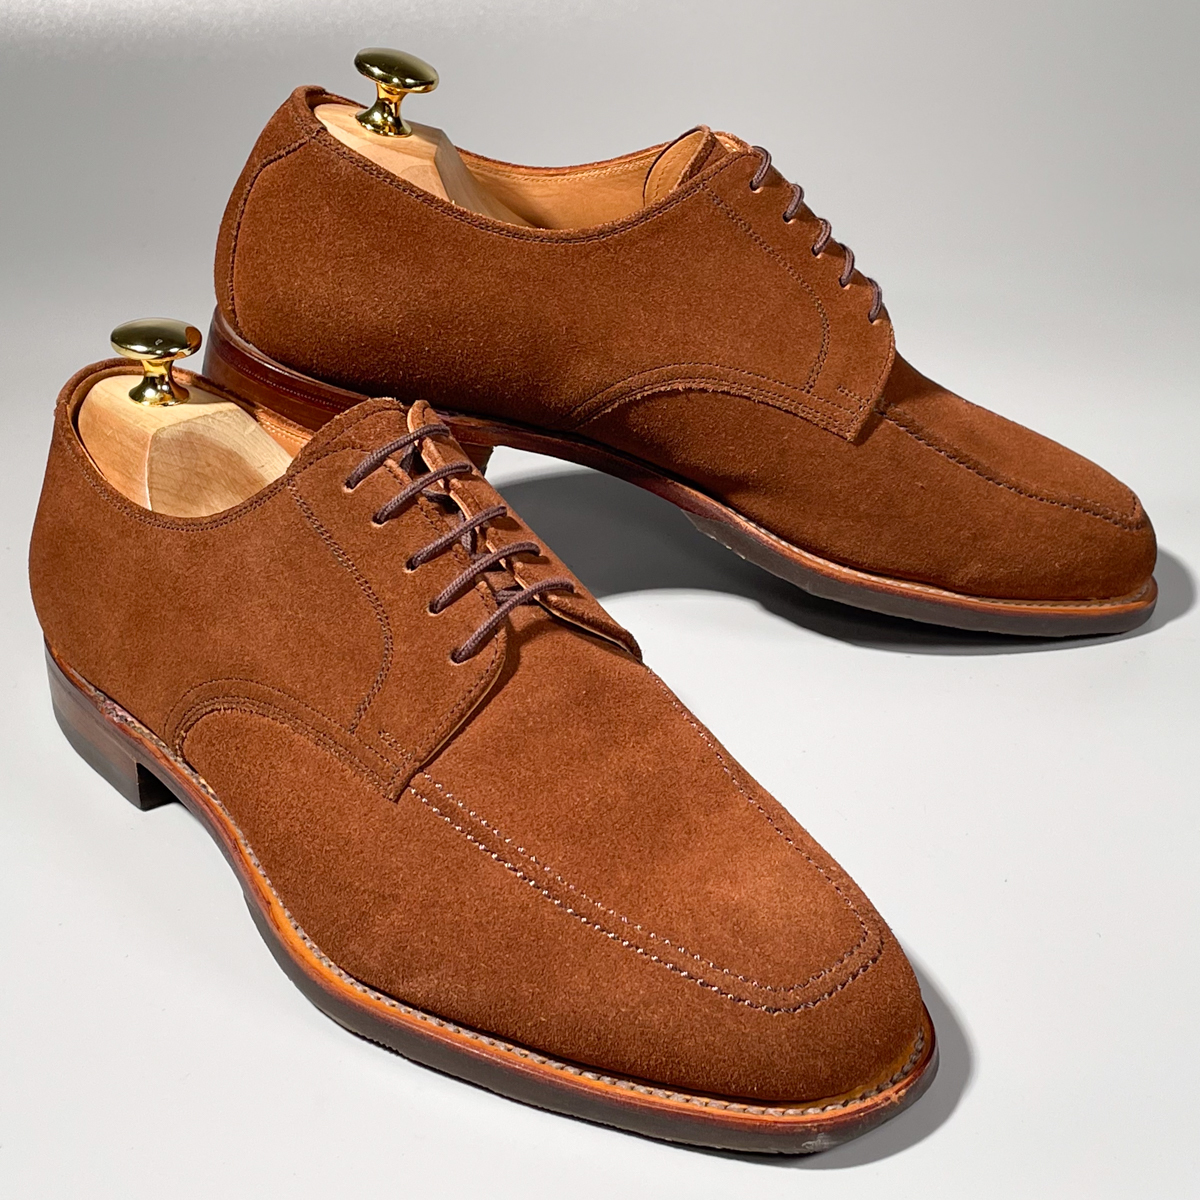 即決 SCOTCH GRAIN スコッチグレイン Uチップ ブラウン 茶色 メンズ 本革 スエード 革靴 25cm ビジネスシューズ フォーマル 紳士靴 A1755の画像2